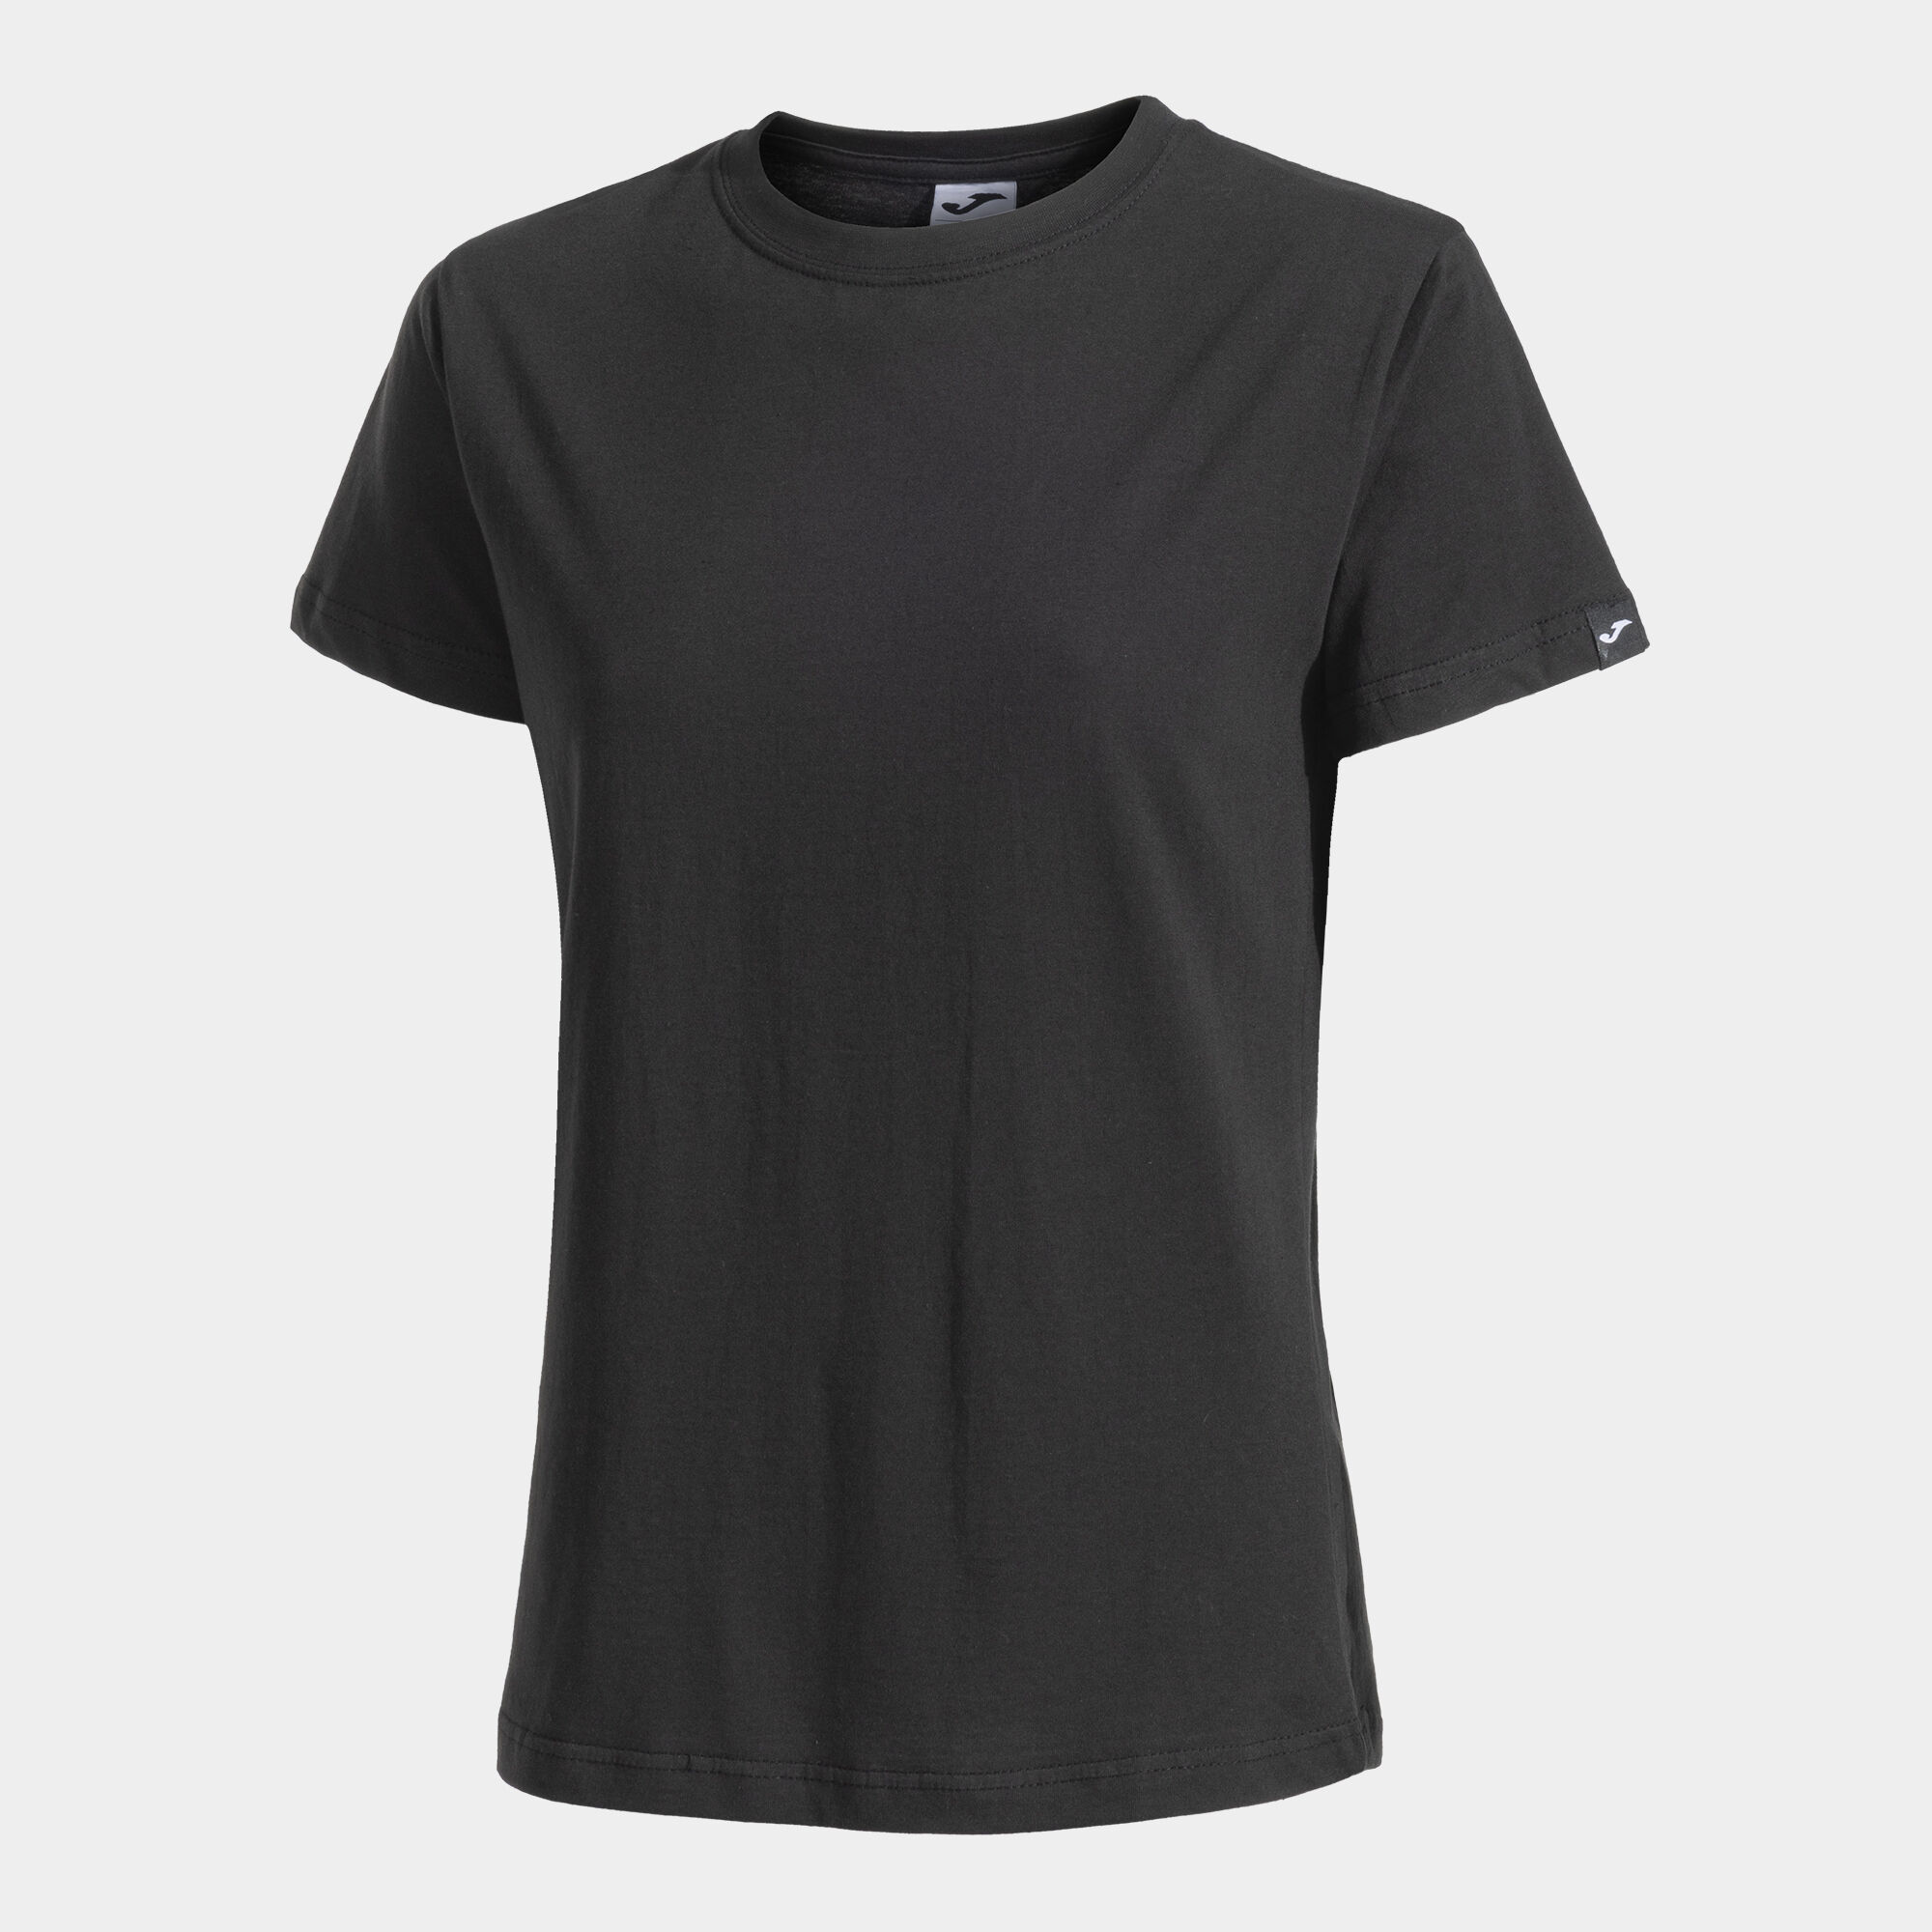 Camiseta manga corta mujer Desert negro